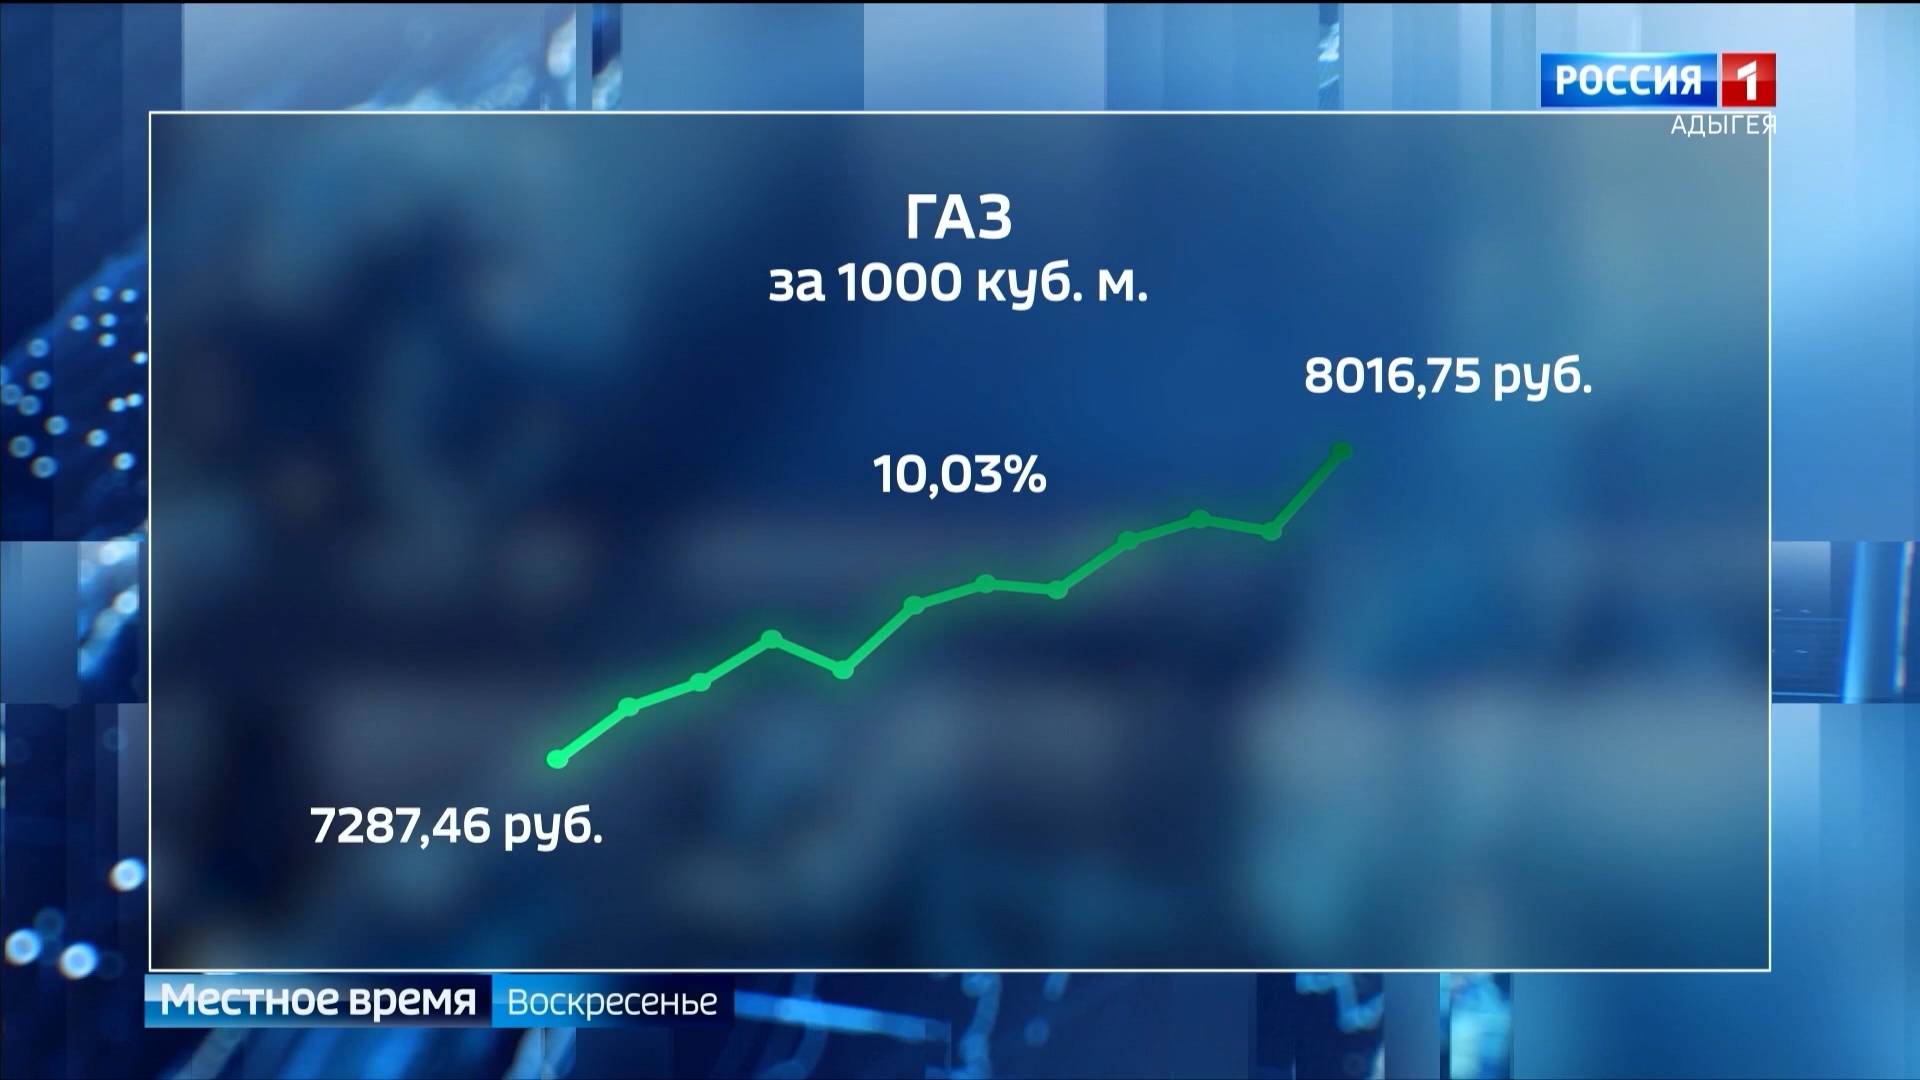 С 1 июля, после почти 2-летнего перерыва  тарифы повышаются. В среднем по России рост составит 10%